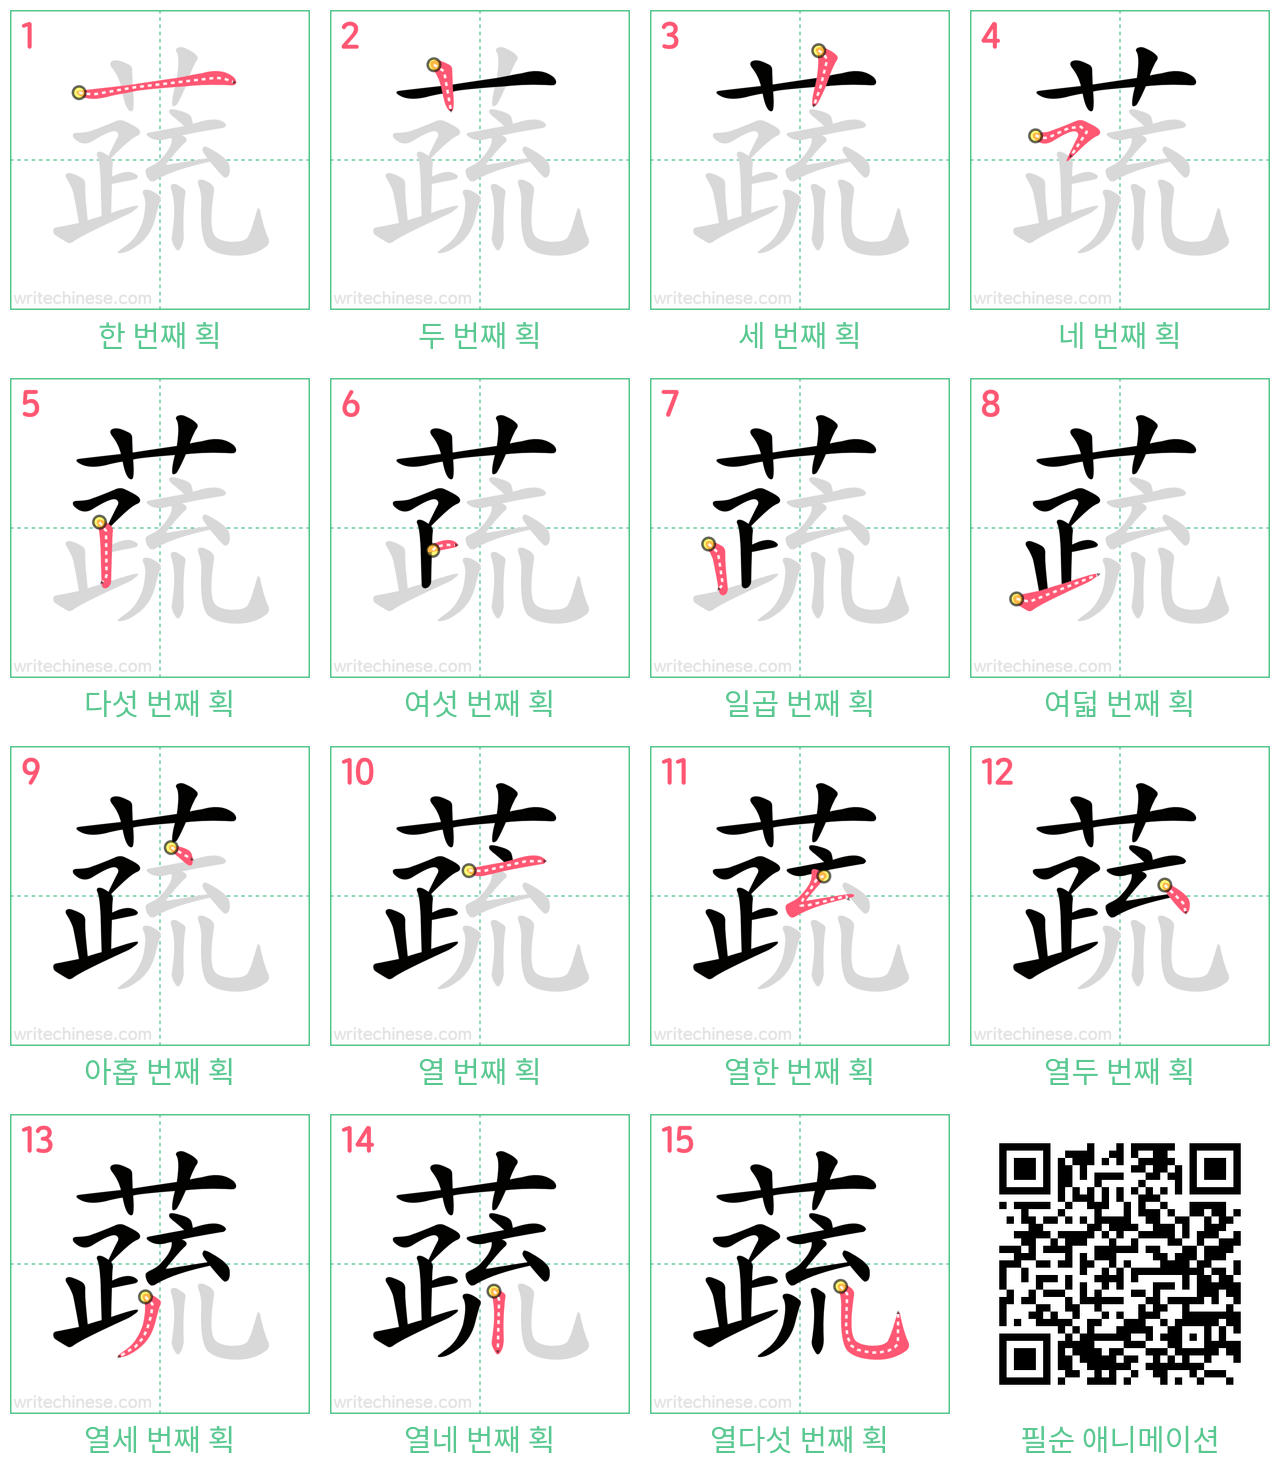 蔬 step-by-step stroke order diagrams